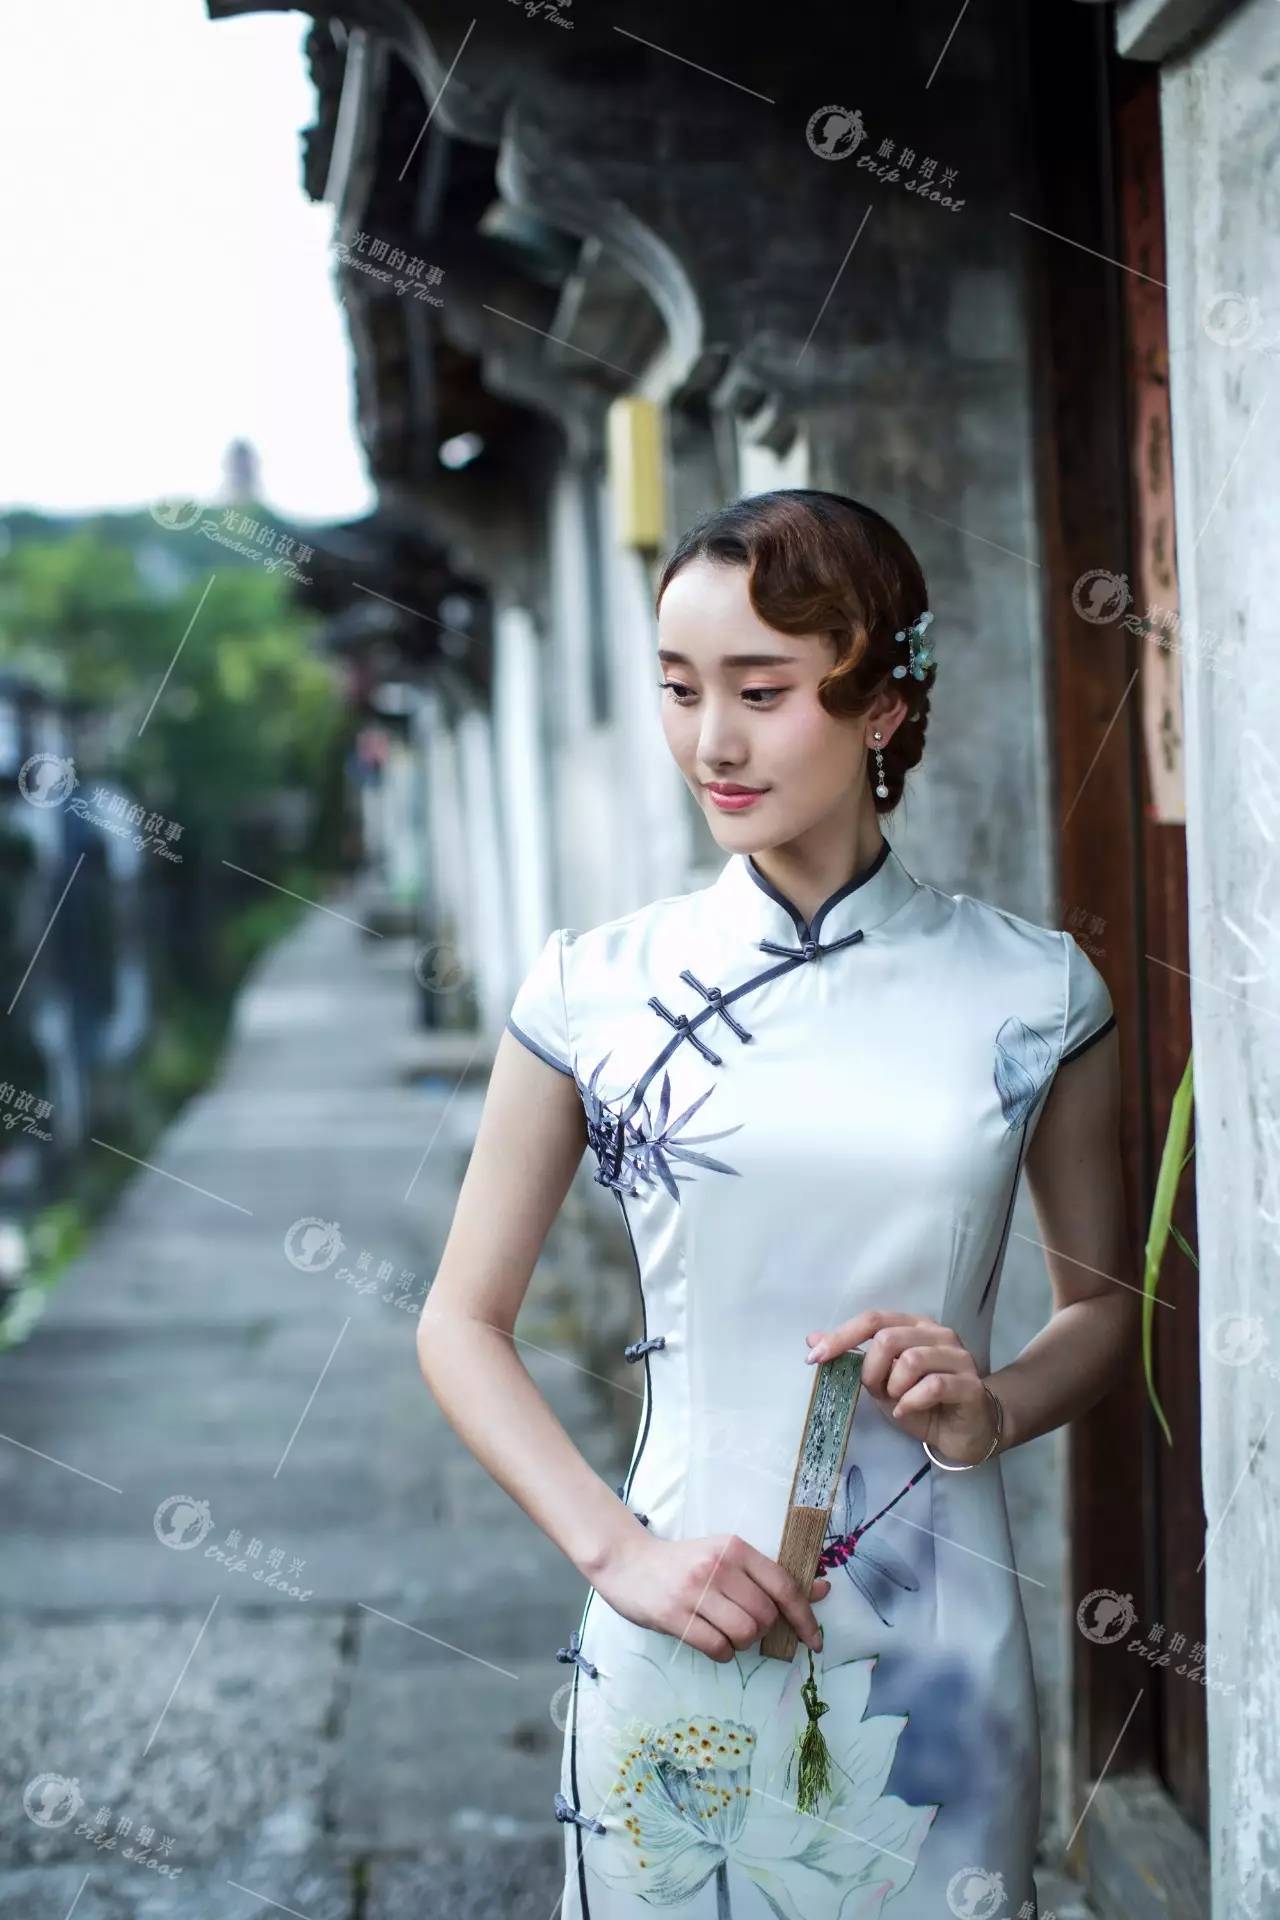 正文  江南风情的婚纱照最吸引人的就是雅致的意境油纸伞,画扇,旗袍